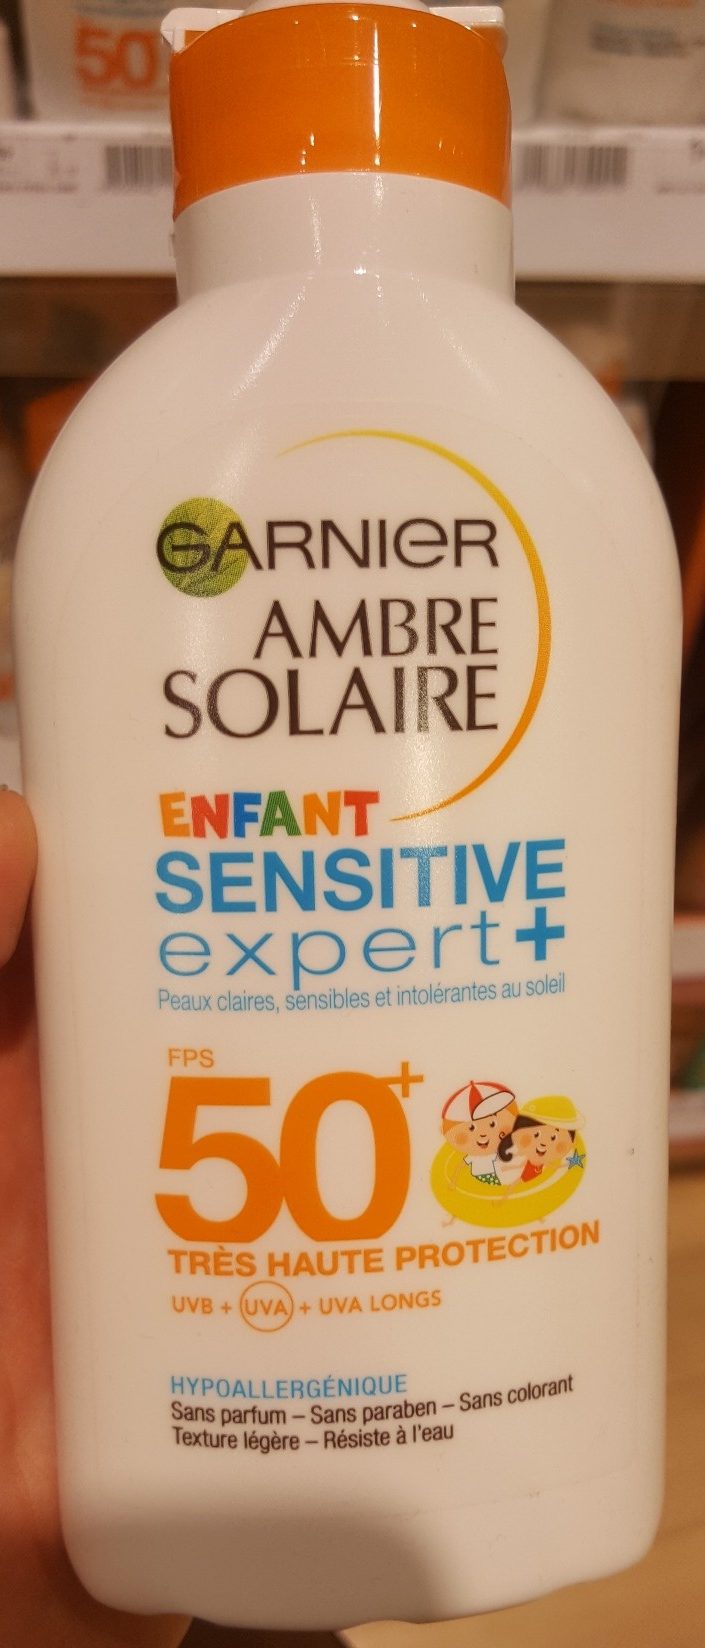 Ambre Solaire Enfant Sensitive Expert + - Product - fr